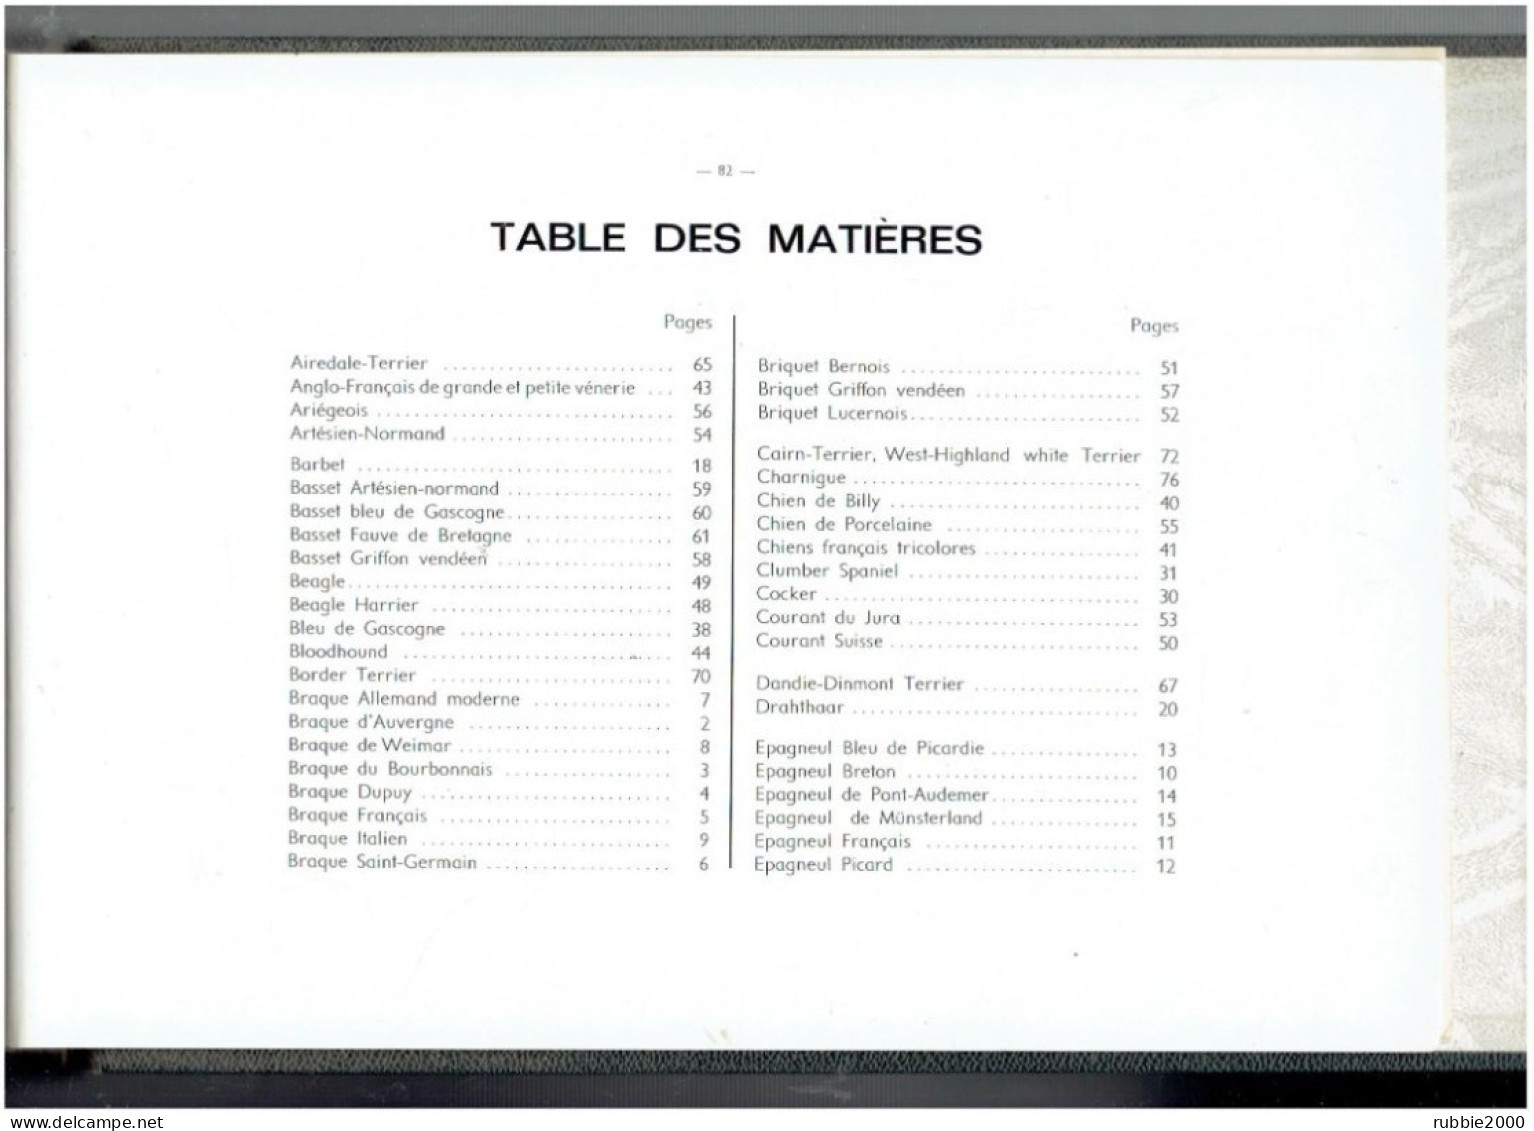 Les Chiens De Chasse. Monogaphies De Chiens D'arrêt, Chiens Courants, Terriers Et Lévriers. Manufrance. 1965 - Chasse/Pêche